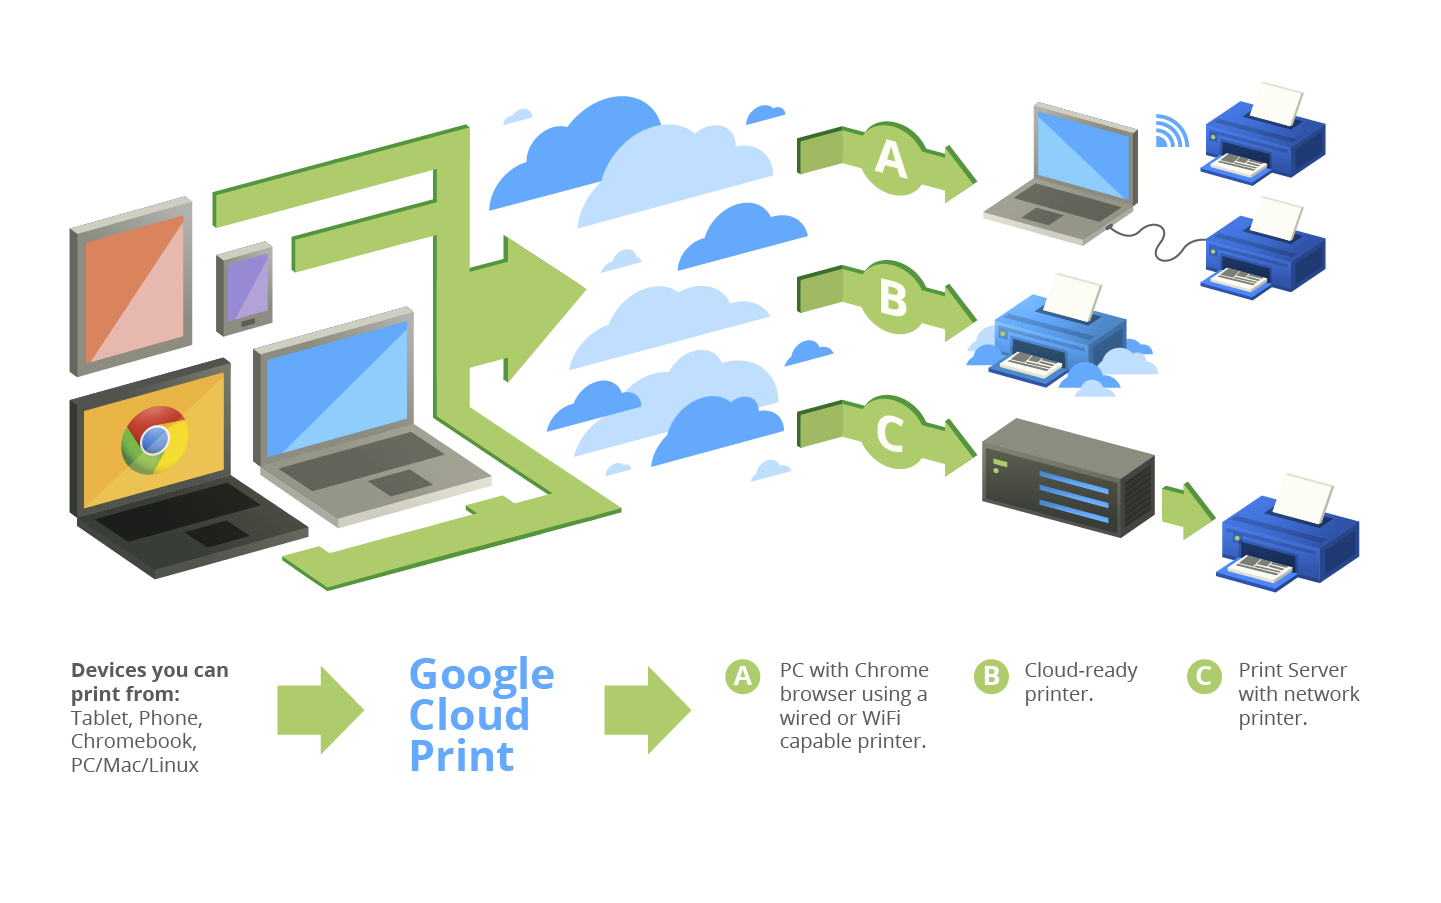 Abbildung 2. Einsatzmöglichkeiten der Google Cloud Print [1] 2.